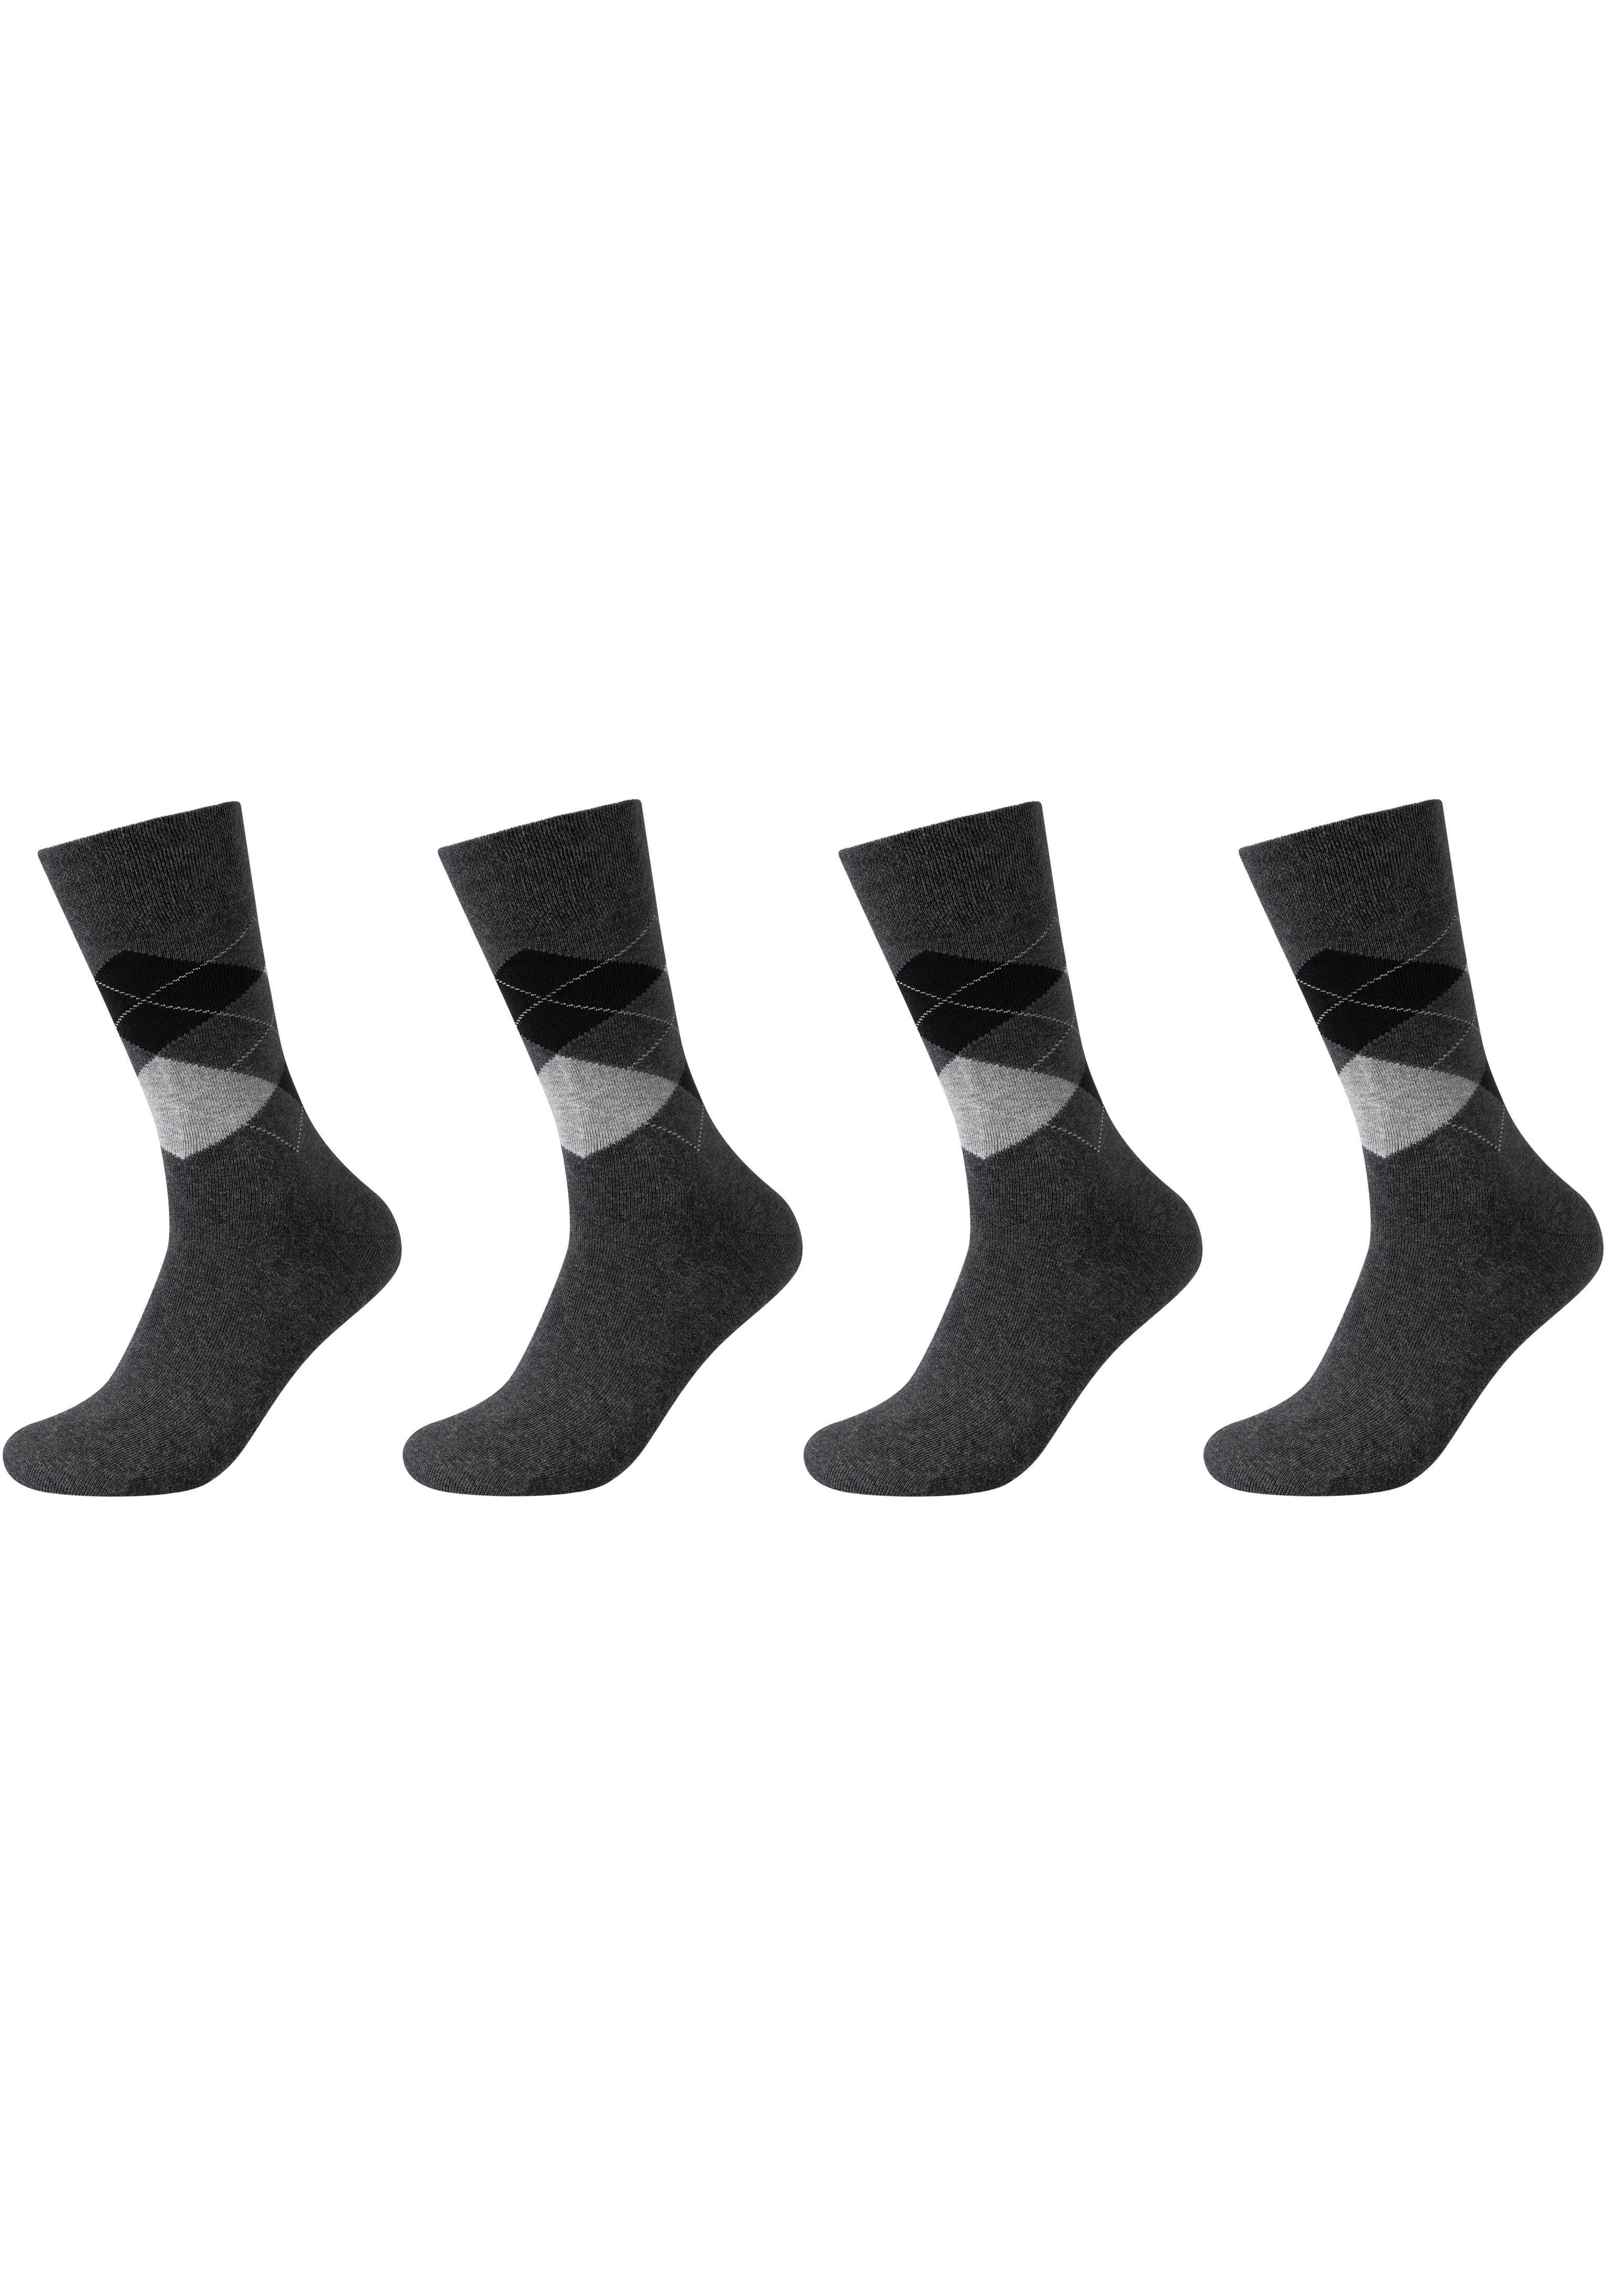 das Faltenfreier vermeidet Gummidruck dank Socken Camano ohne ca-soft-Bund Der Tragekomfort (Packung, Einschneiden Elasthan-Anteil, 4-Paar)